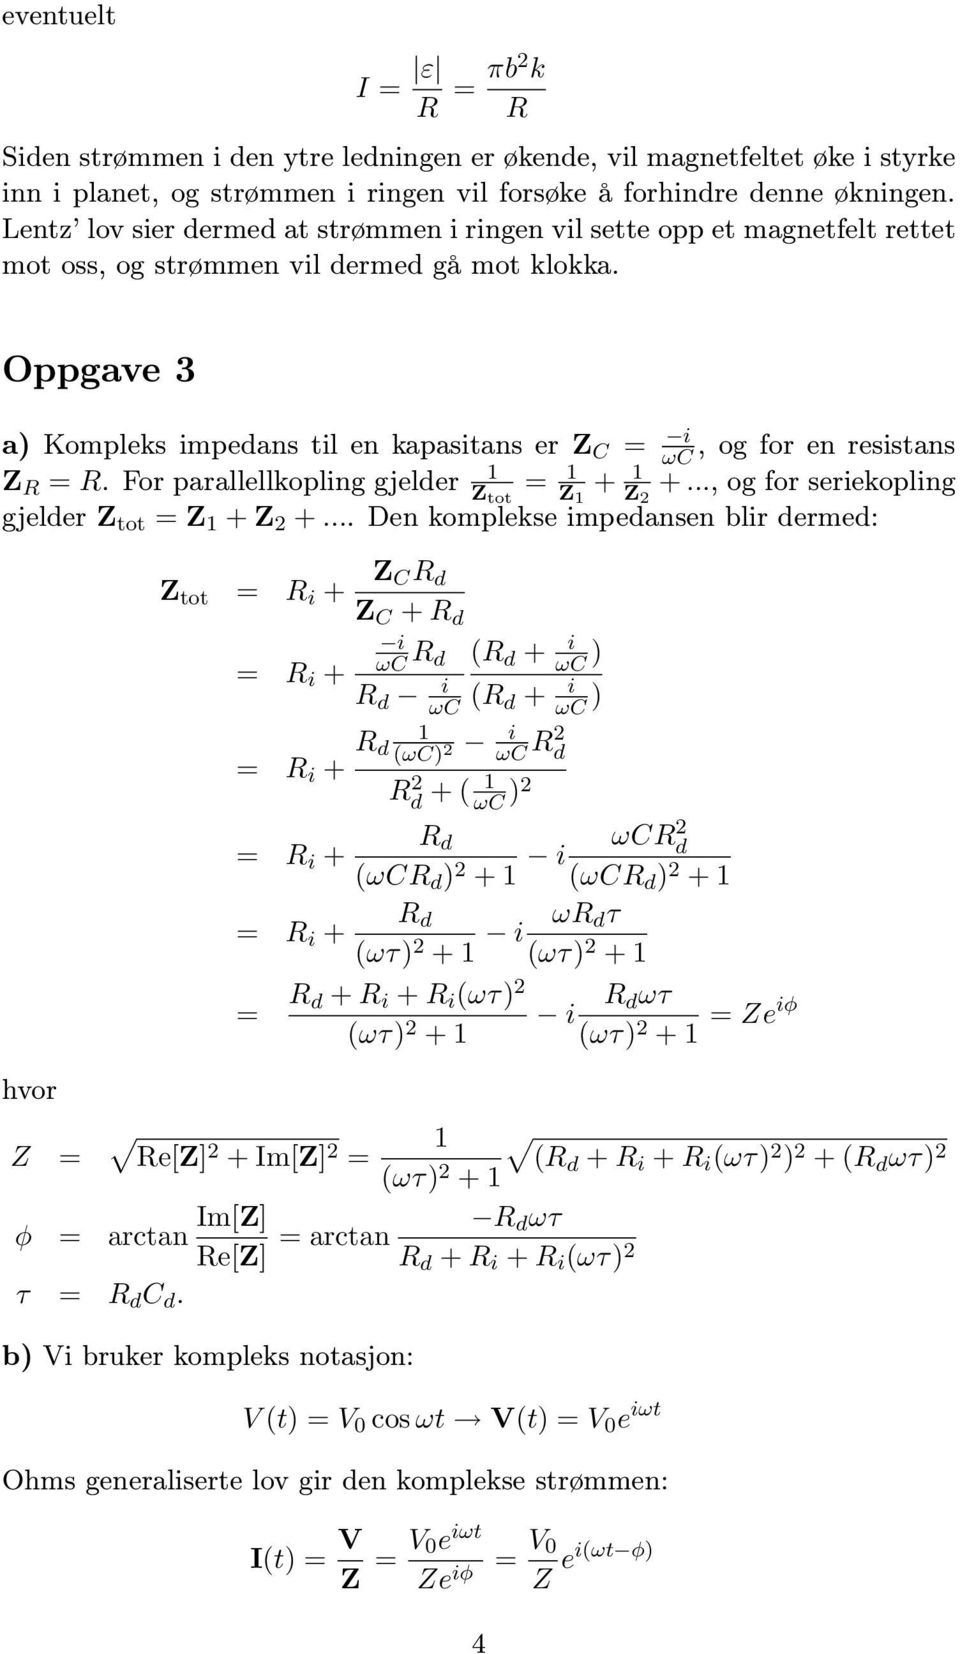 Oppgave 3 a) Kompleks mpedans tl en kapastans er Z C = ωc, og for en resstans 1 Z R = R. For parallellkoplng gjelder Z tot = 1 Z 1 + 1 Z +..., og for serekoplng gjelder Z tot = Z 1 + Z +.